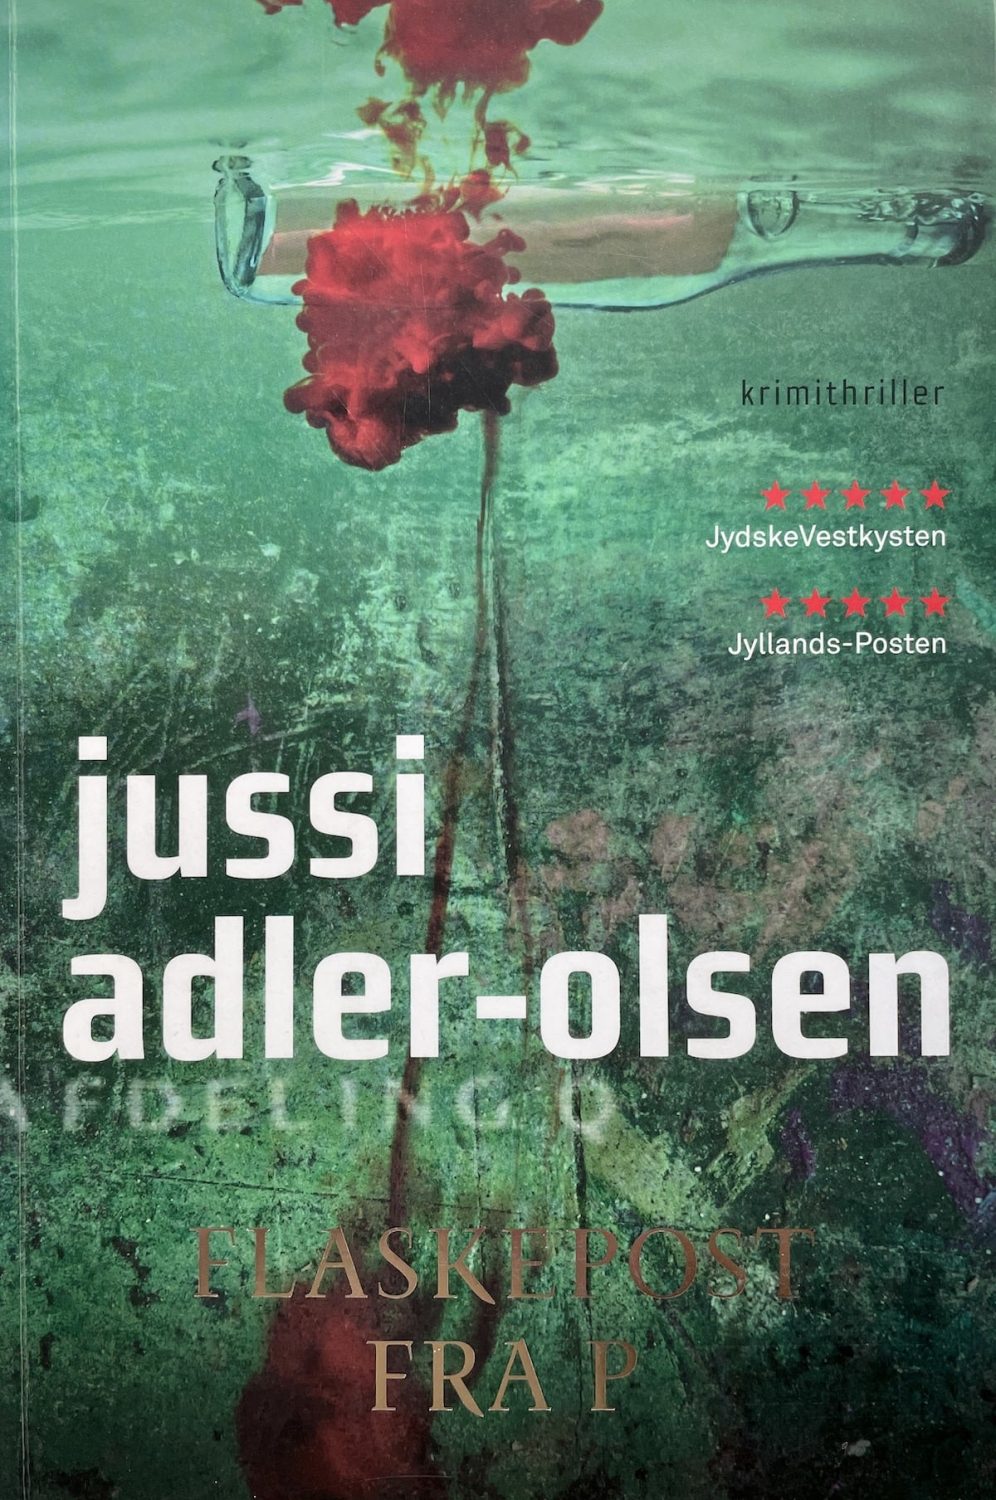 Flaskepost fra P, Jussi Adler-Olsen, brugt bog